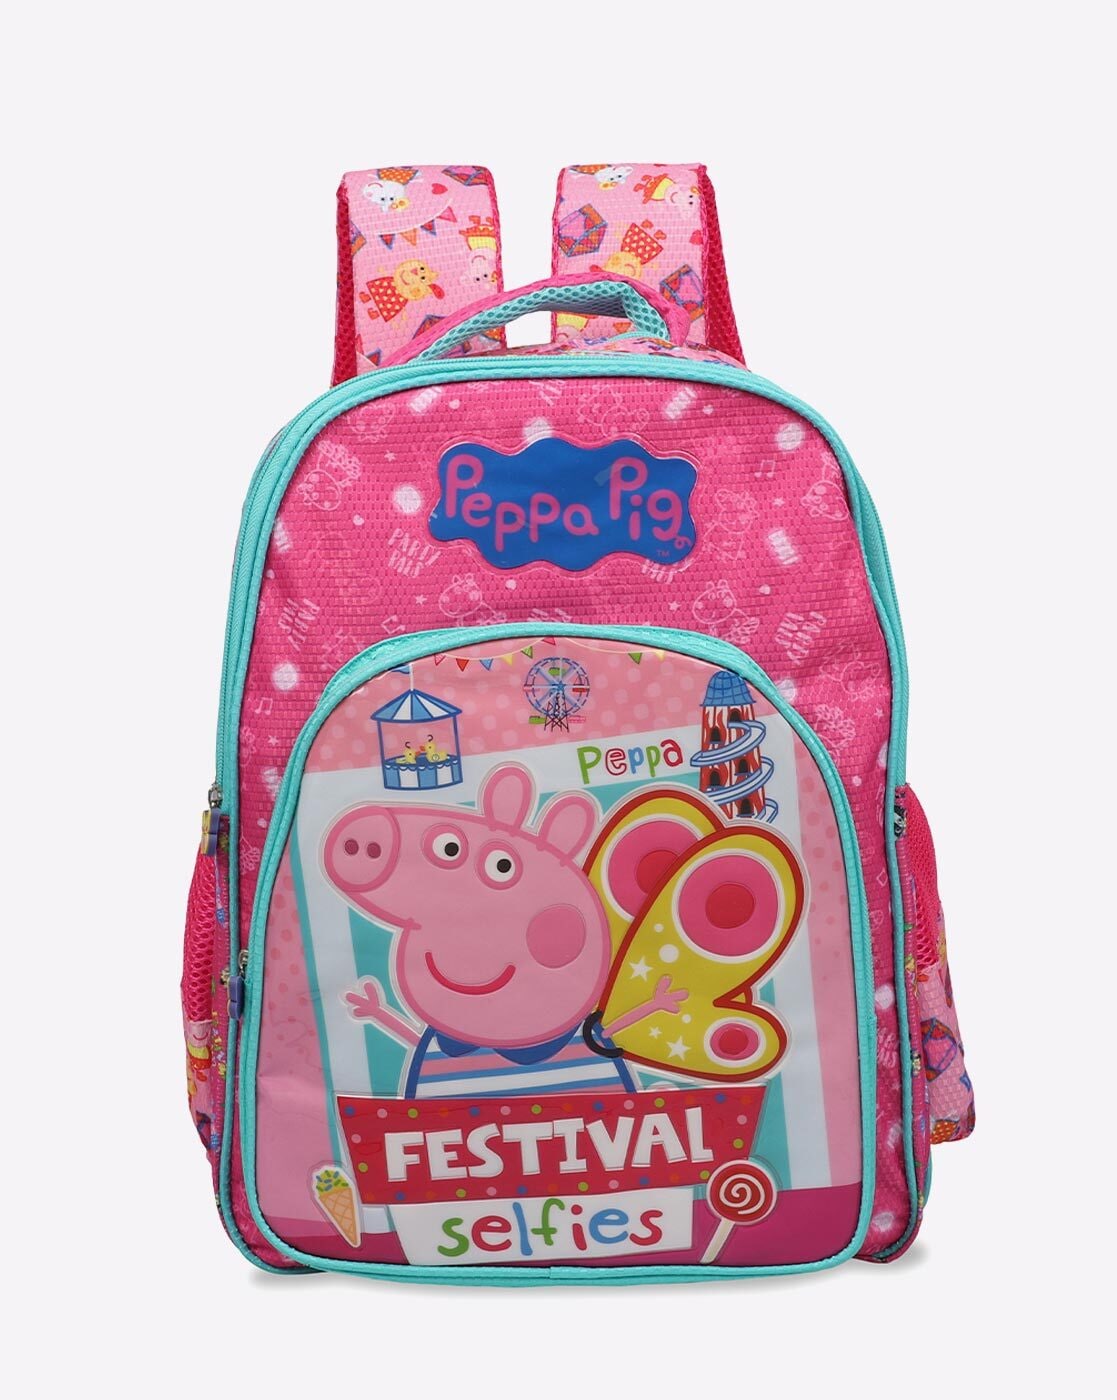 FASNO Peppa Pig Plush Bag for baby kids girl and boy